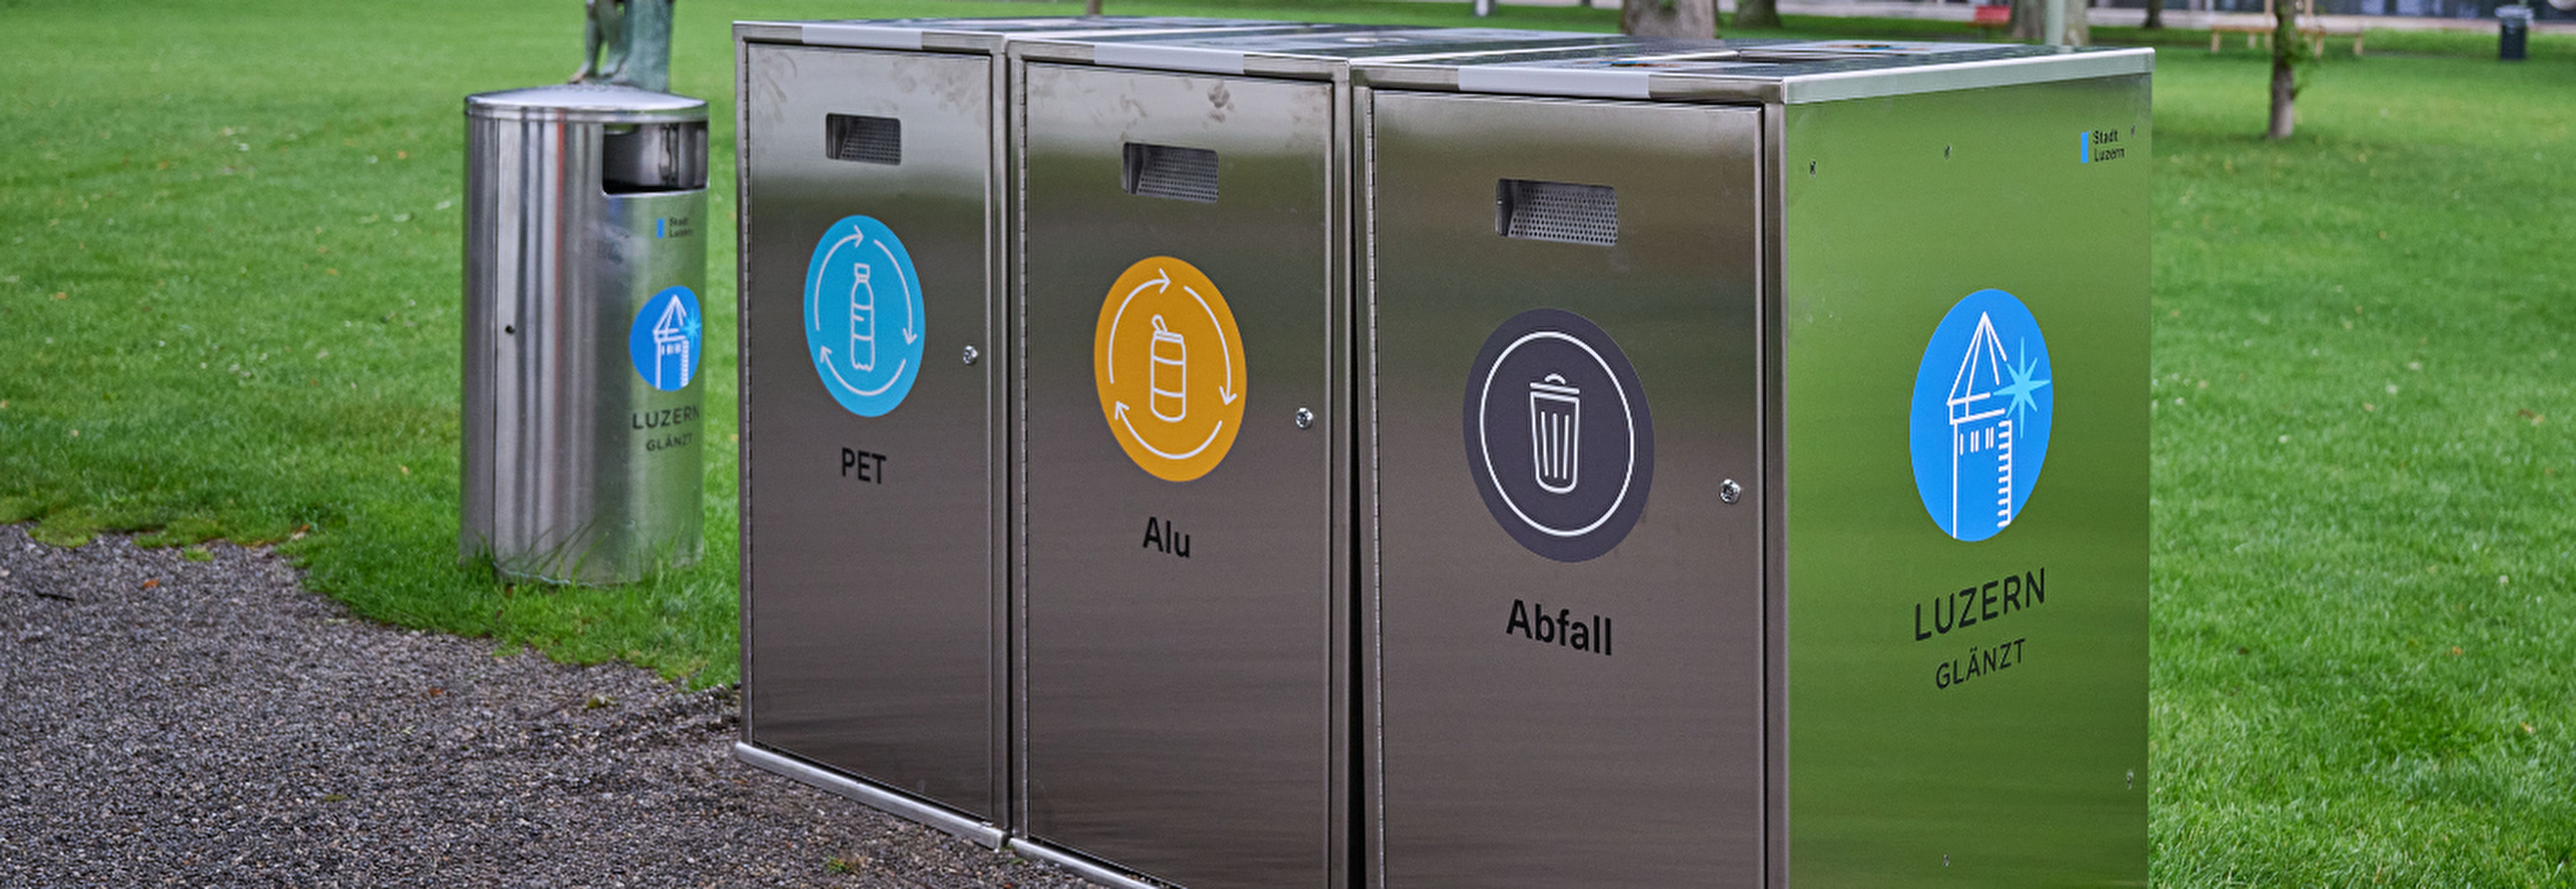 Lidowiese: Neue Recyclingstationen mit Abfalltrennung (Bild: Roberto Conciatori)